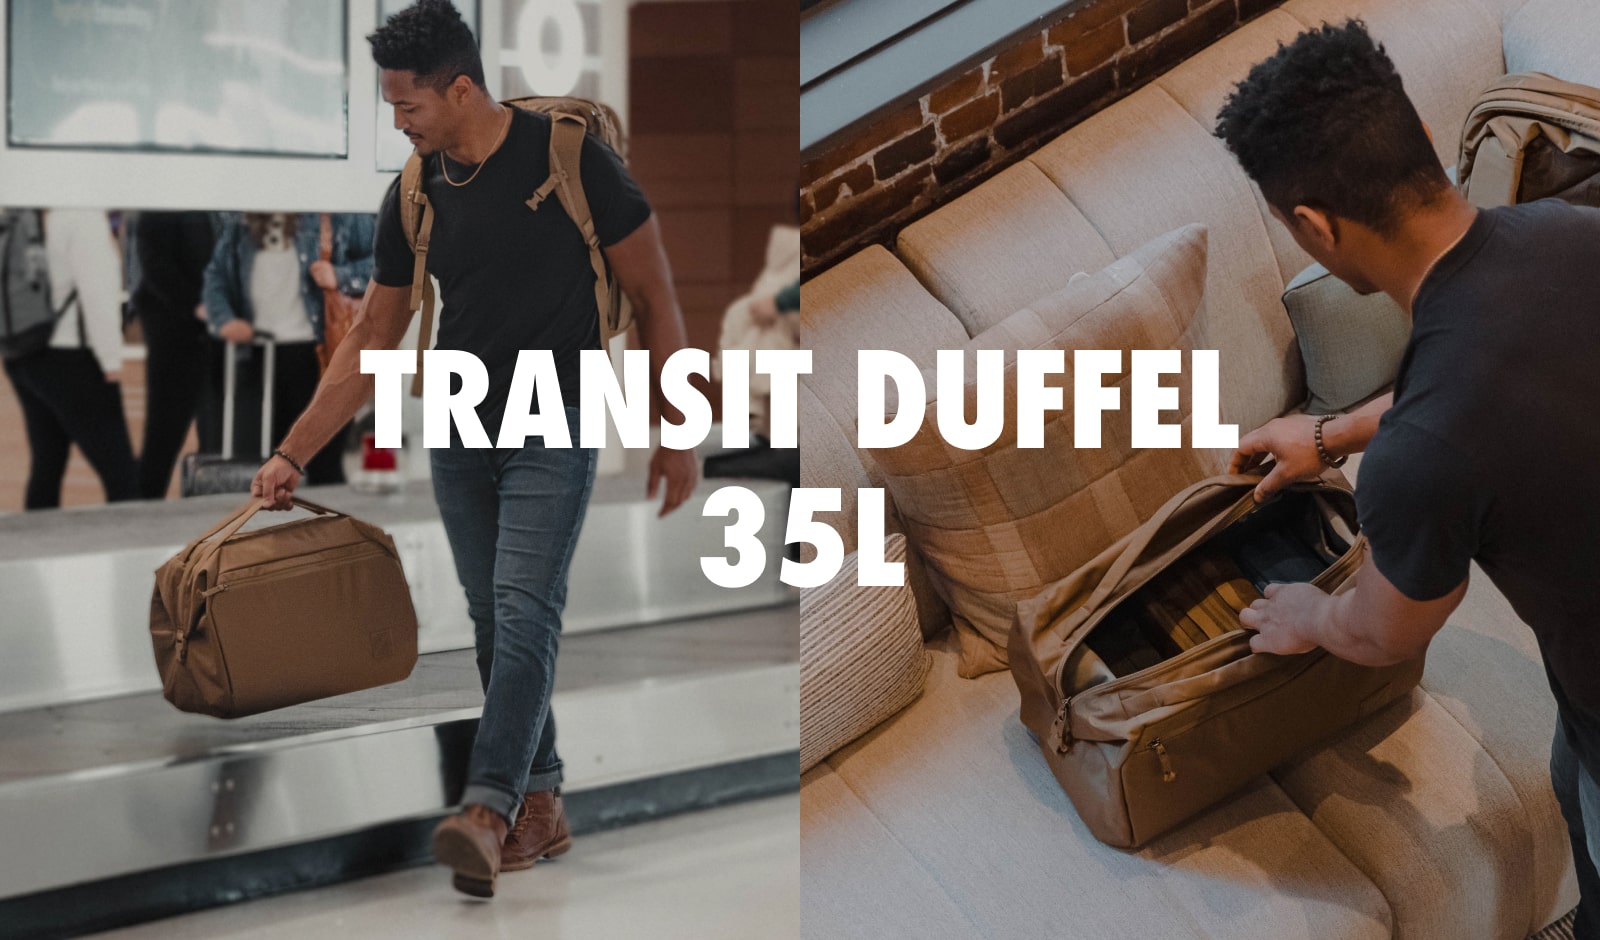 Transit Duffel 35L